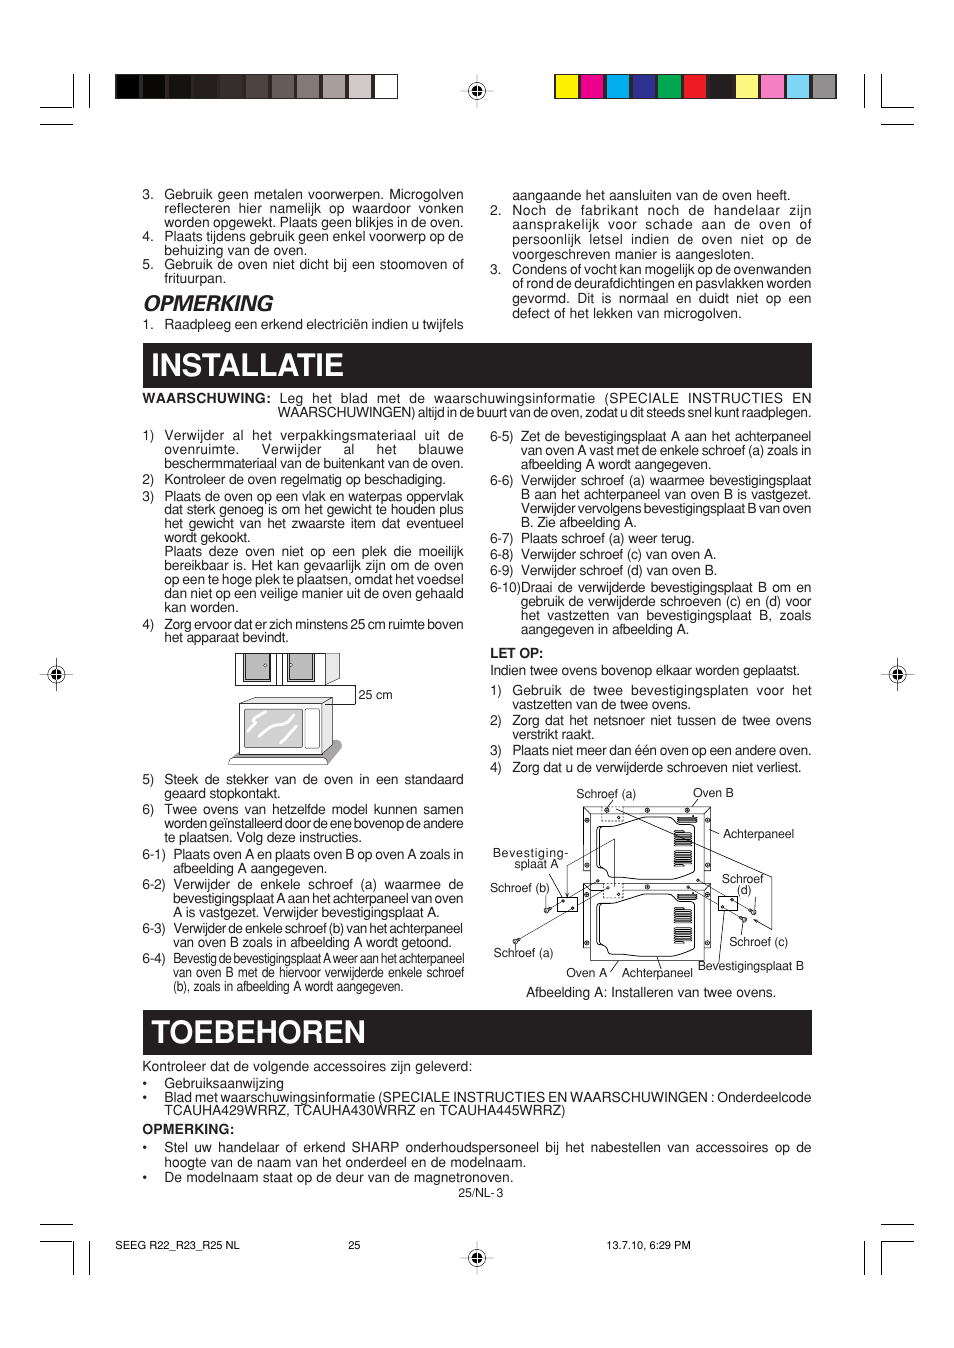 Installatie, Toebehoren, Opmerking | Sharp R-25AM Benutzerhandbuch | Seite 34 / 68